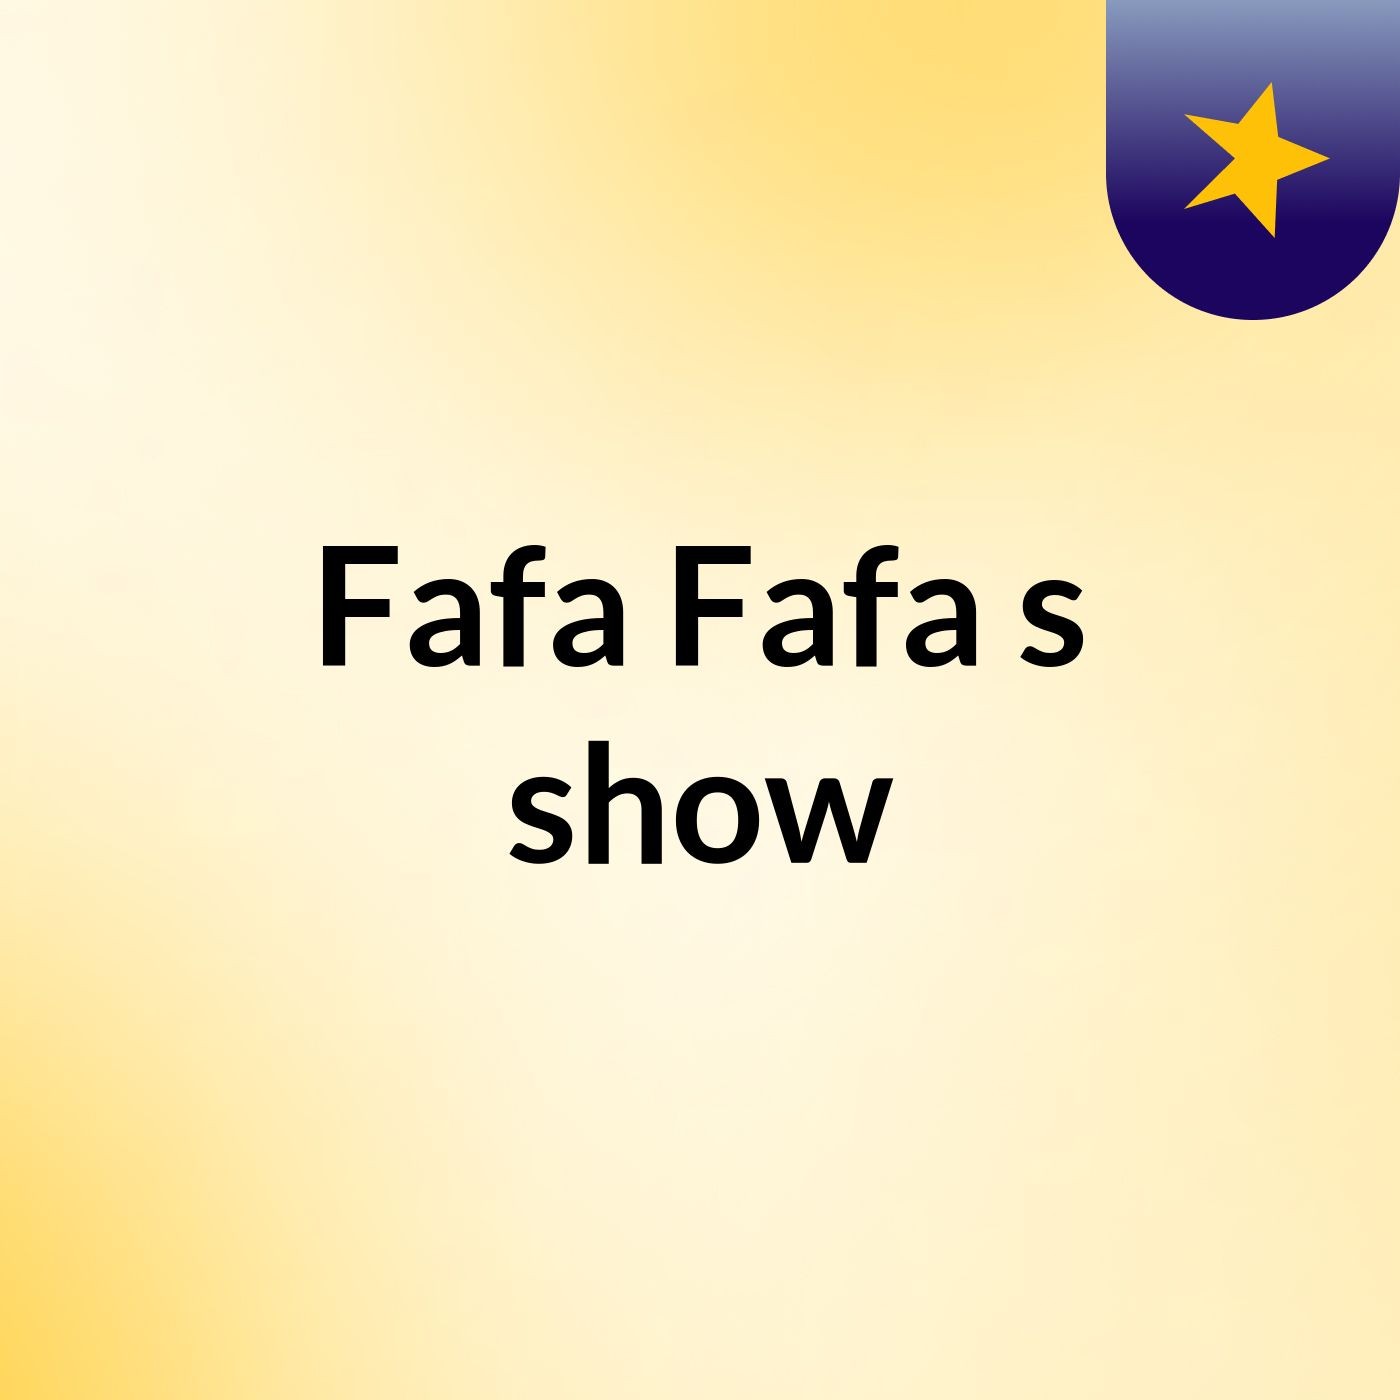 Fafa Fafa's show